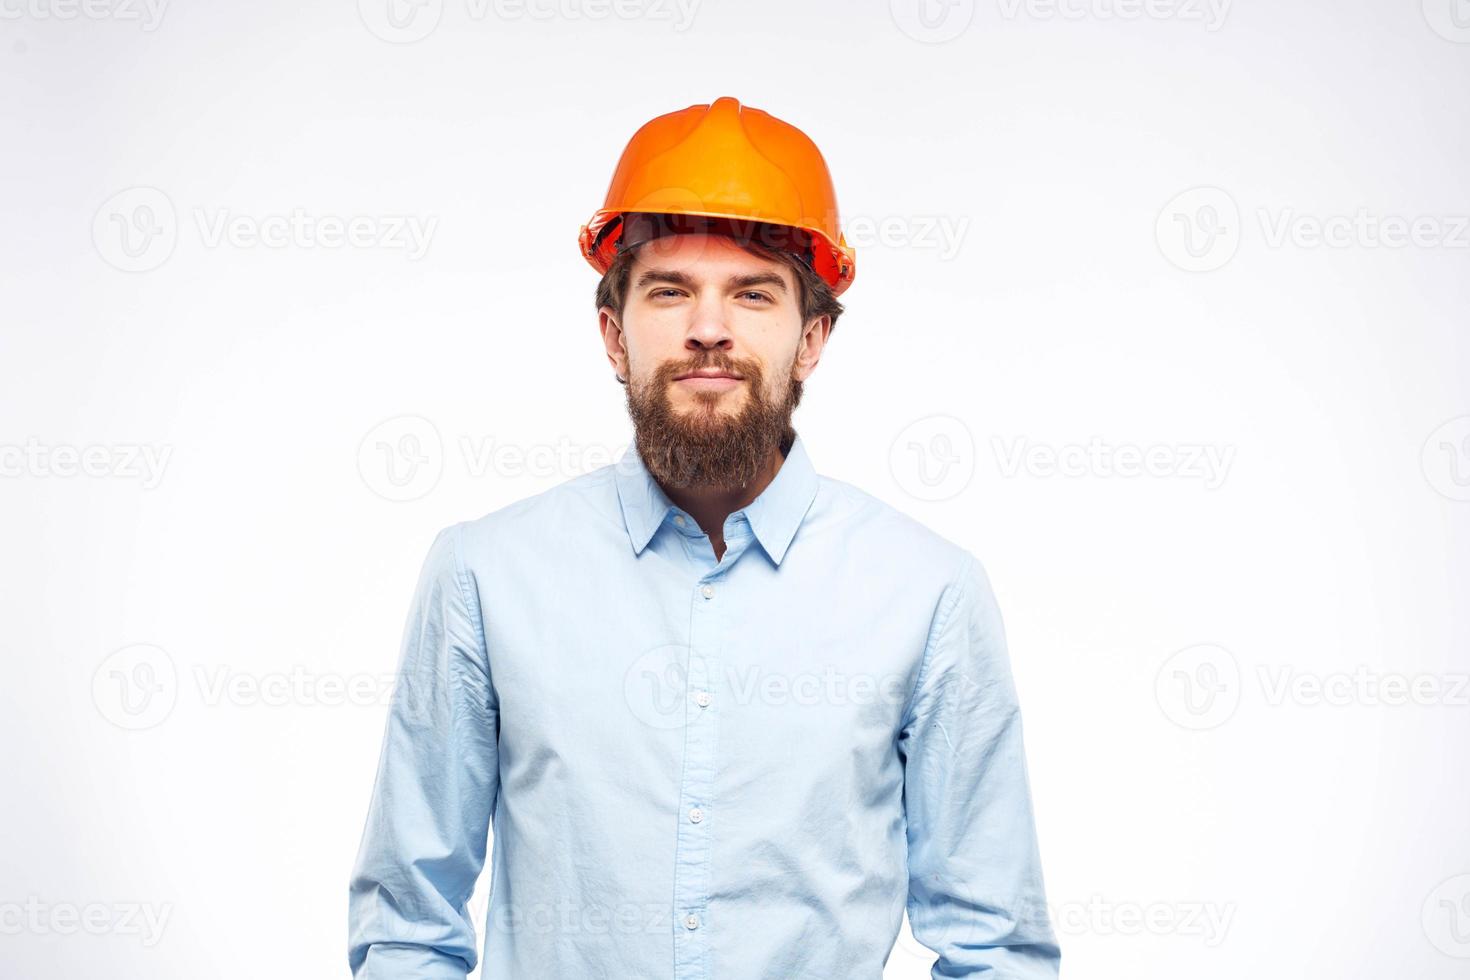 ingenjör i orange färg konstruktion professionell säkerhet industri ljus bakgrund foto